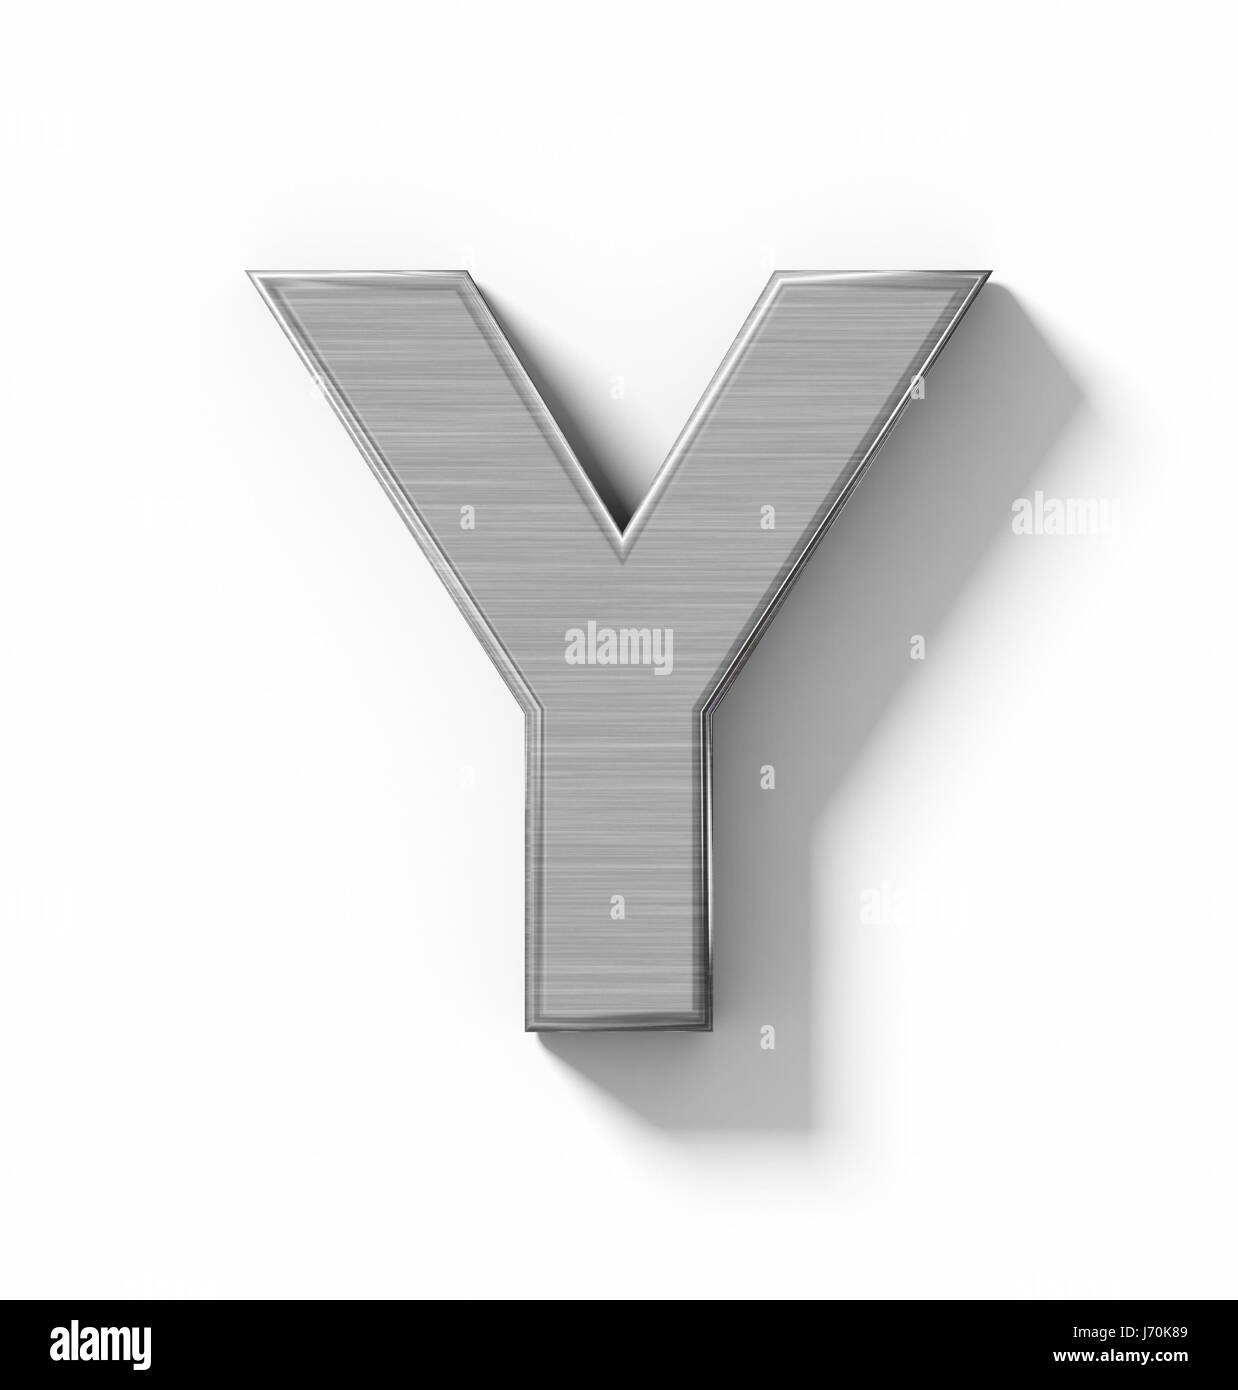 Buchstabe Y 3D Metall isoliert auf weiß mit Schatten - orthogonale Projektion - 3d rendering Stockfoto